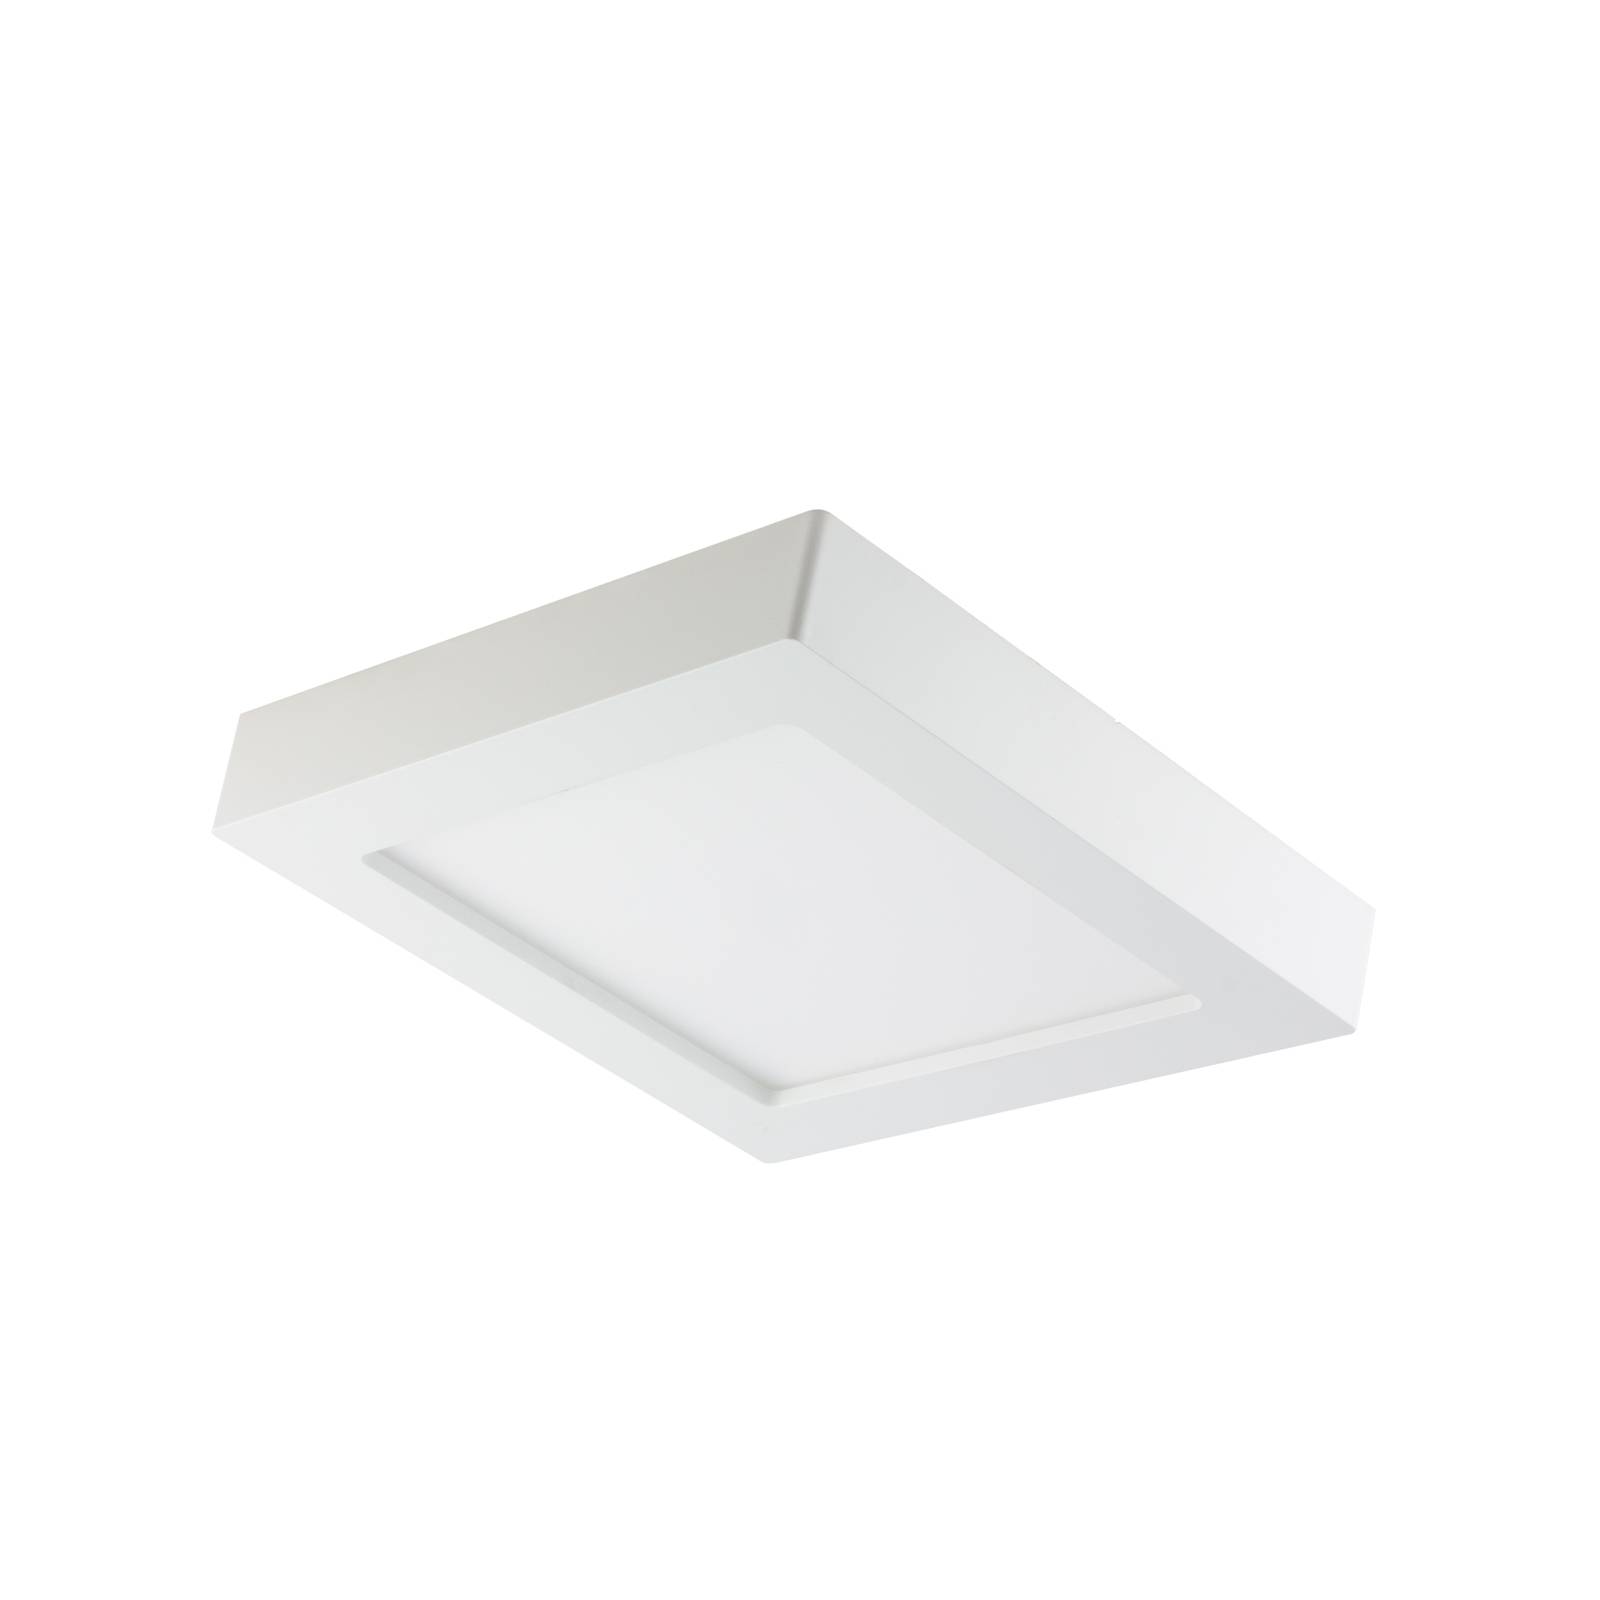 Prios Alette LED ceiling light, white, 17.2 cm